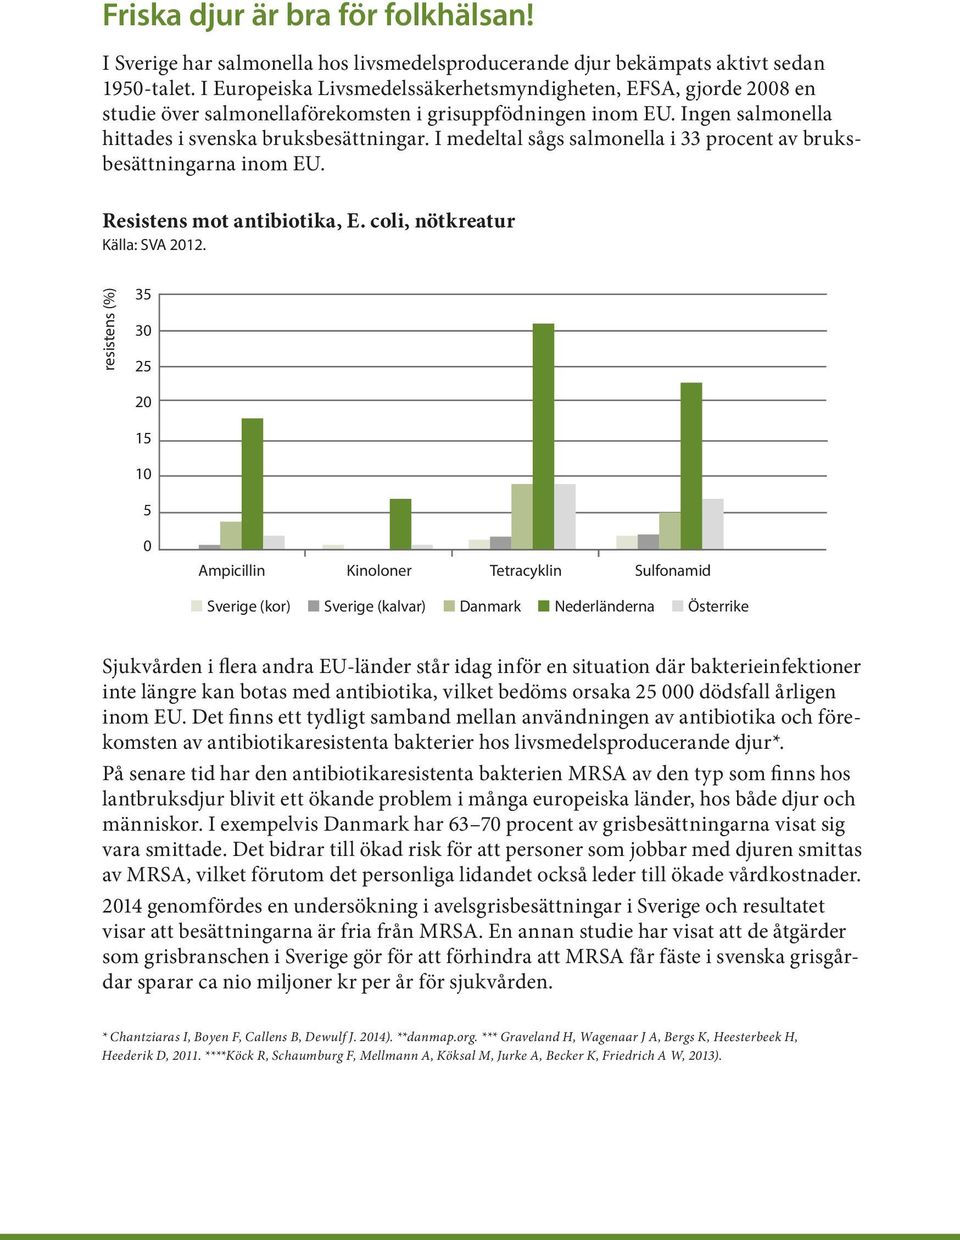 I medeltal sågs salmonella i 33 procent av bruksbesättningarna inom EU. Resistens mot antibiotika, E. coli, nötkreatur Källa: SVA 2012.